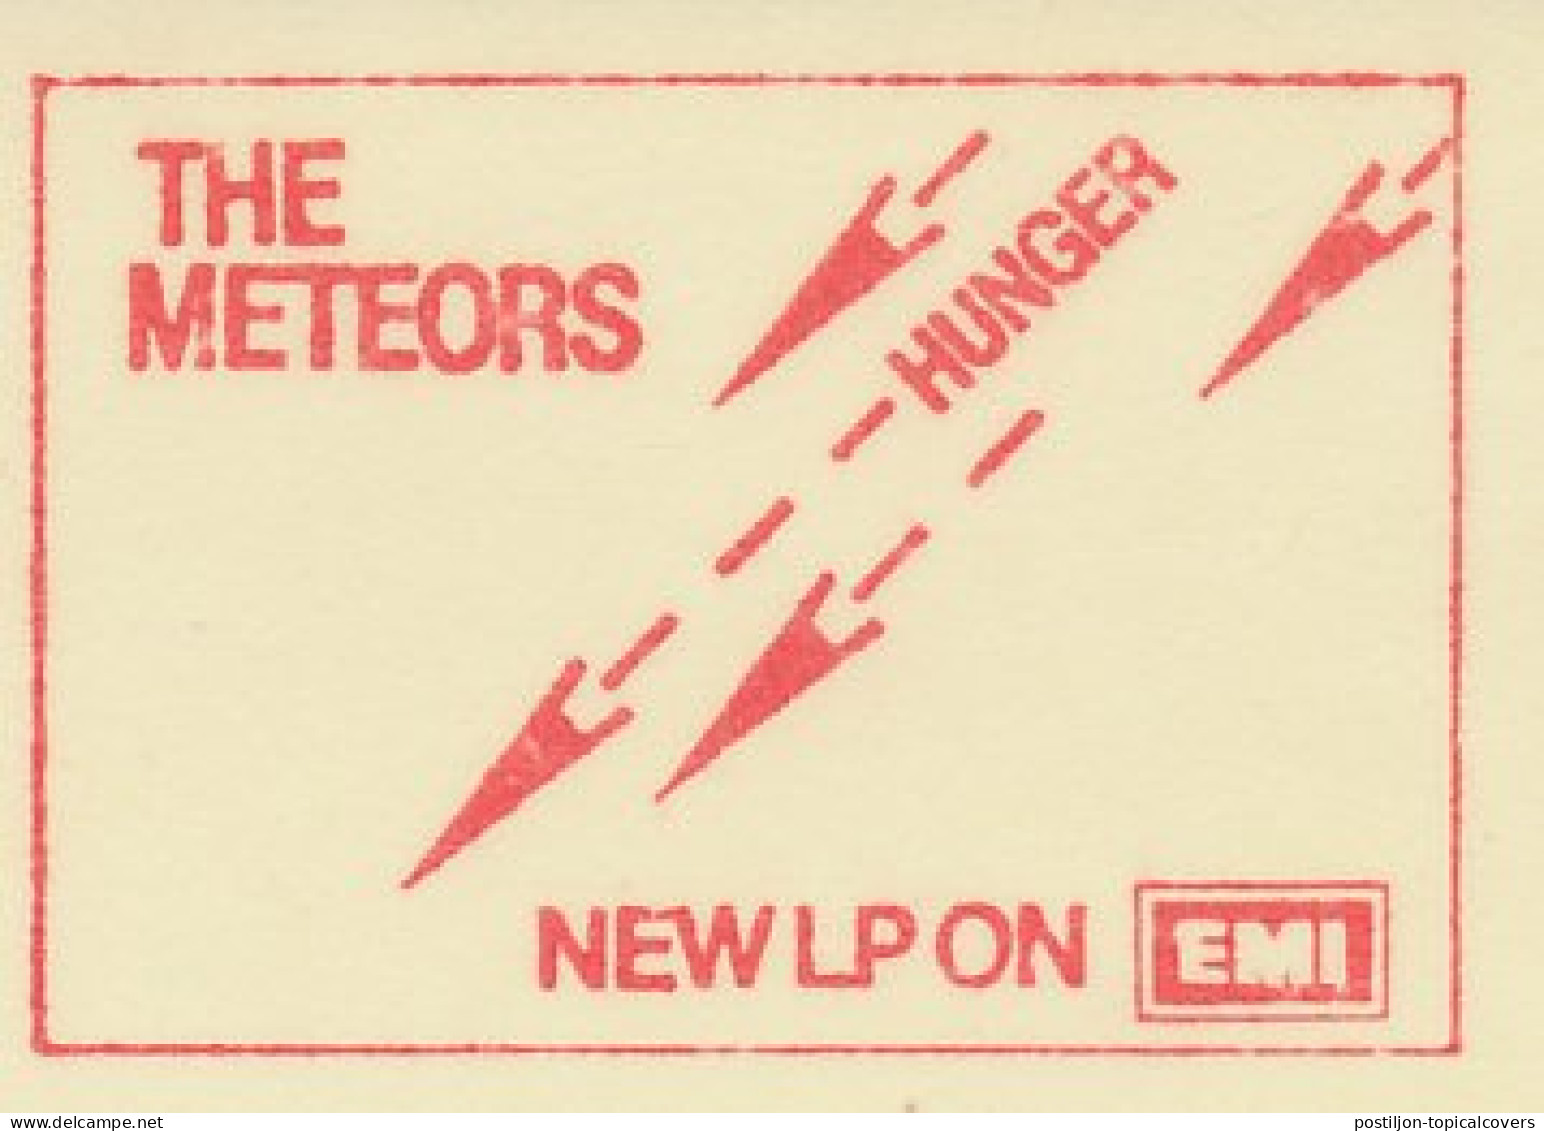 Meter Cut Netherlands 1980 The Meteors - Dutch Rockband - New LP Hunger - Music